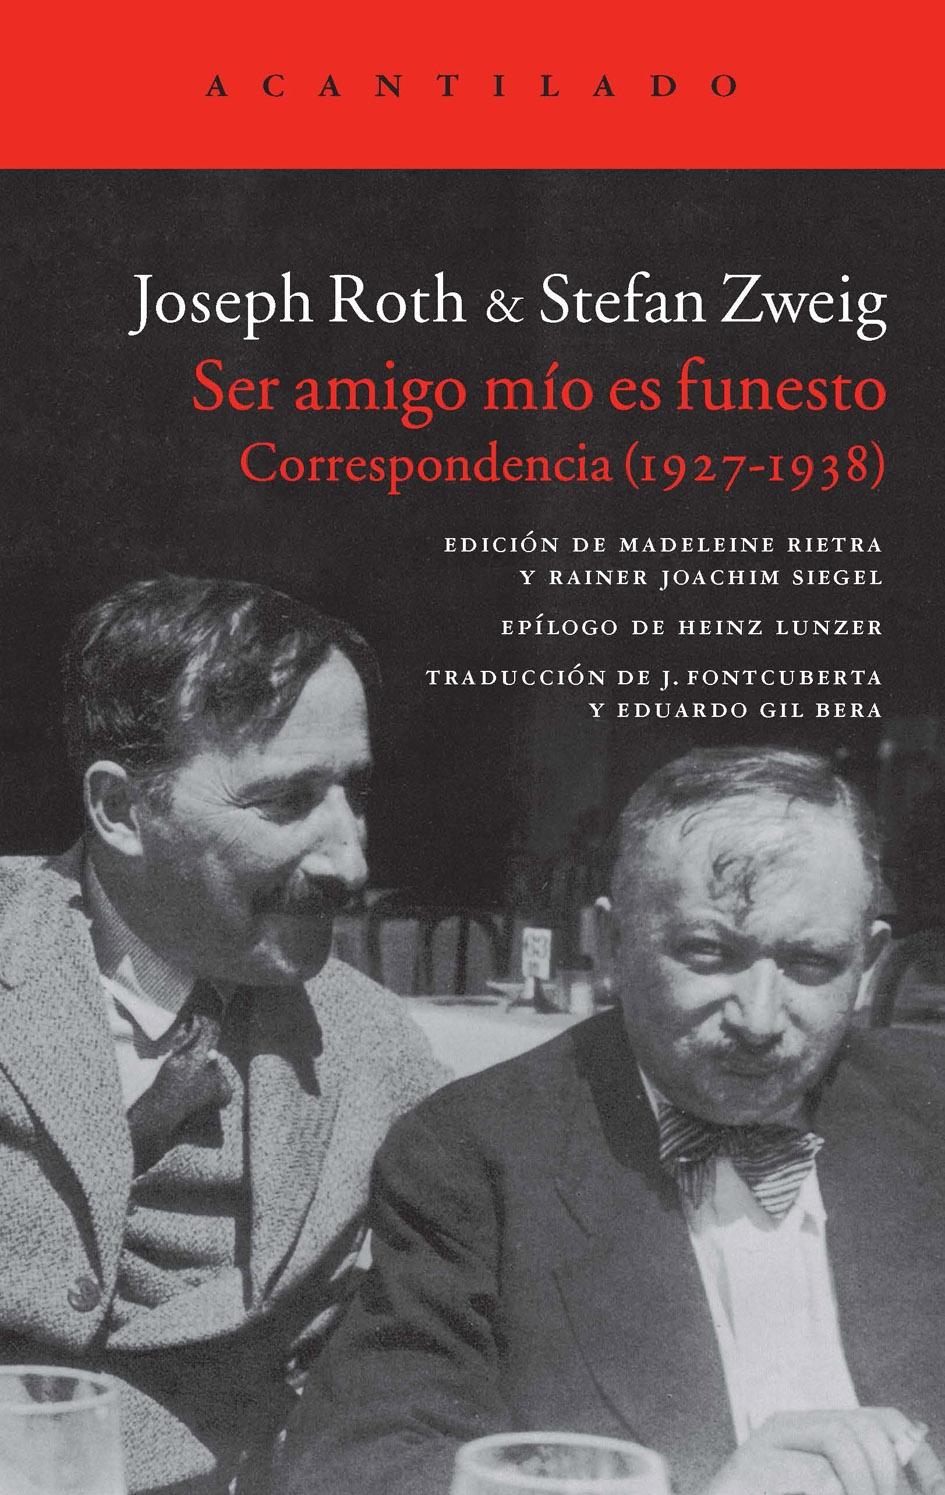 Ser Amigo mío Es Funesto "Correspondencia 1927-1938 Roth & Zweig"